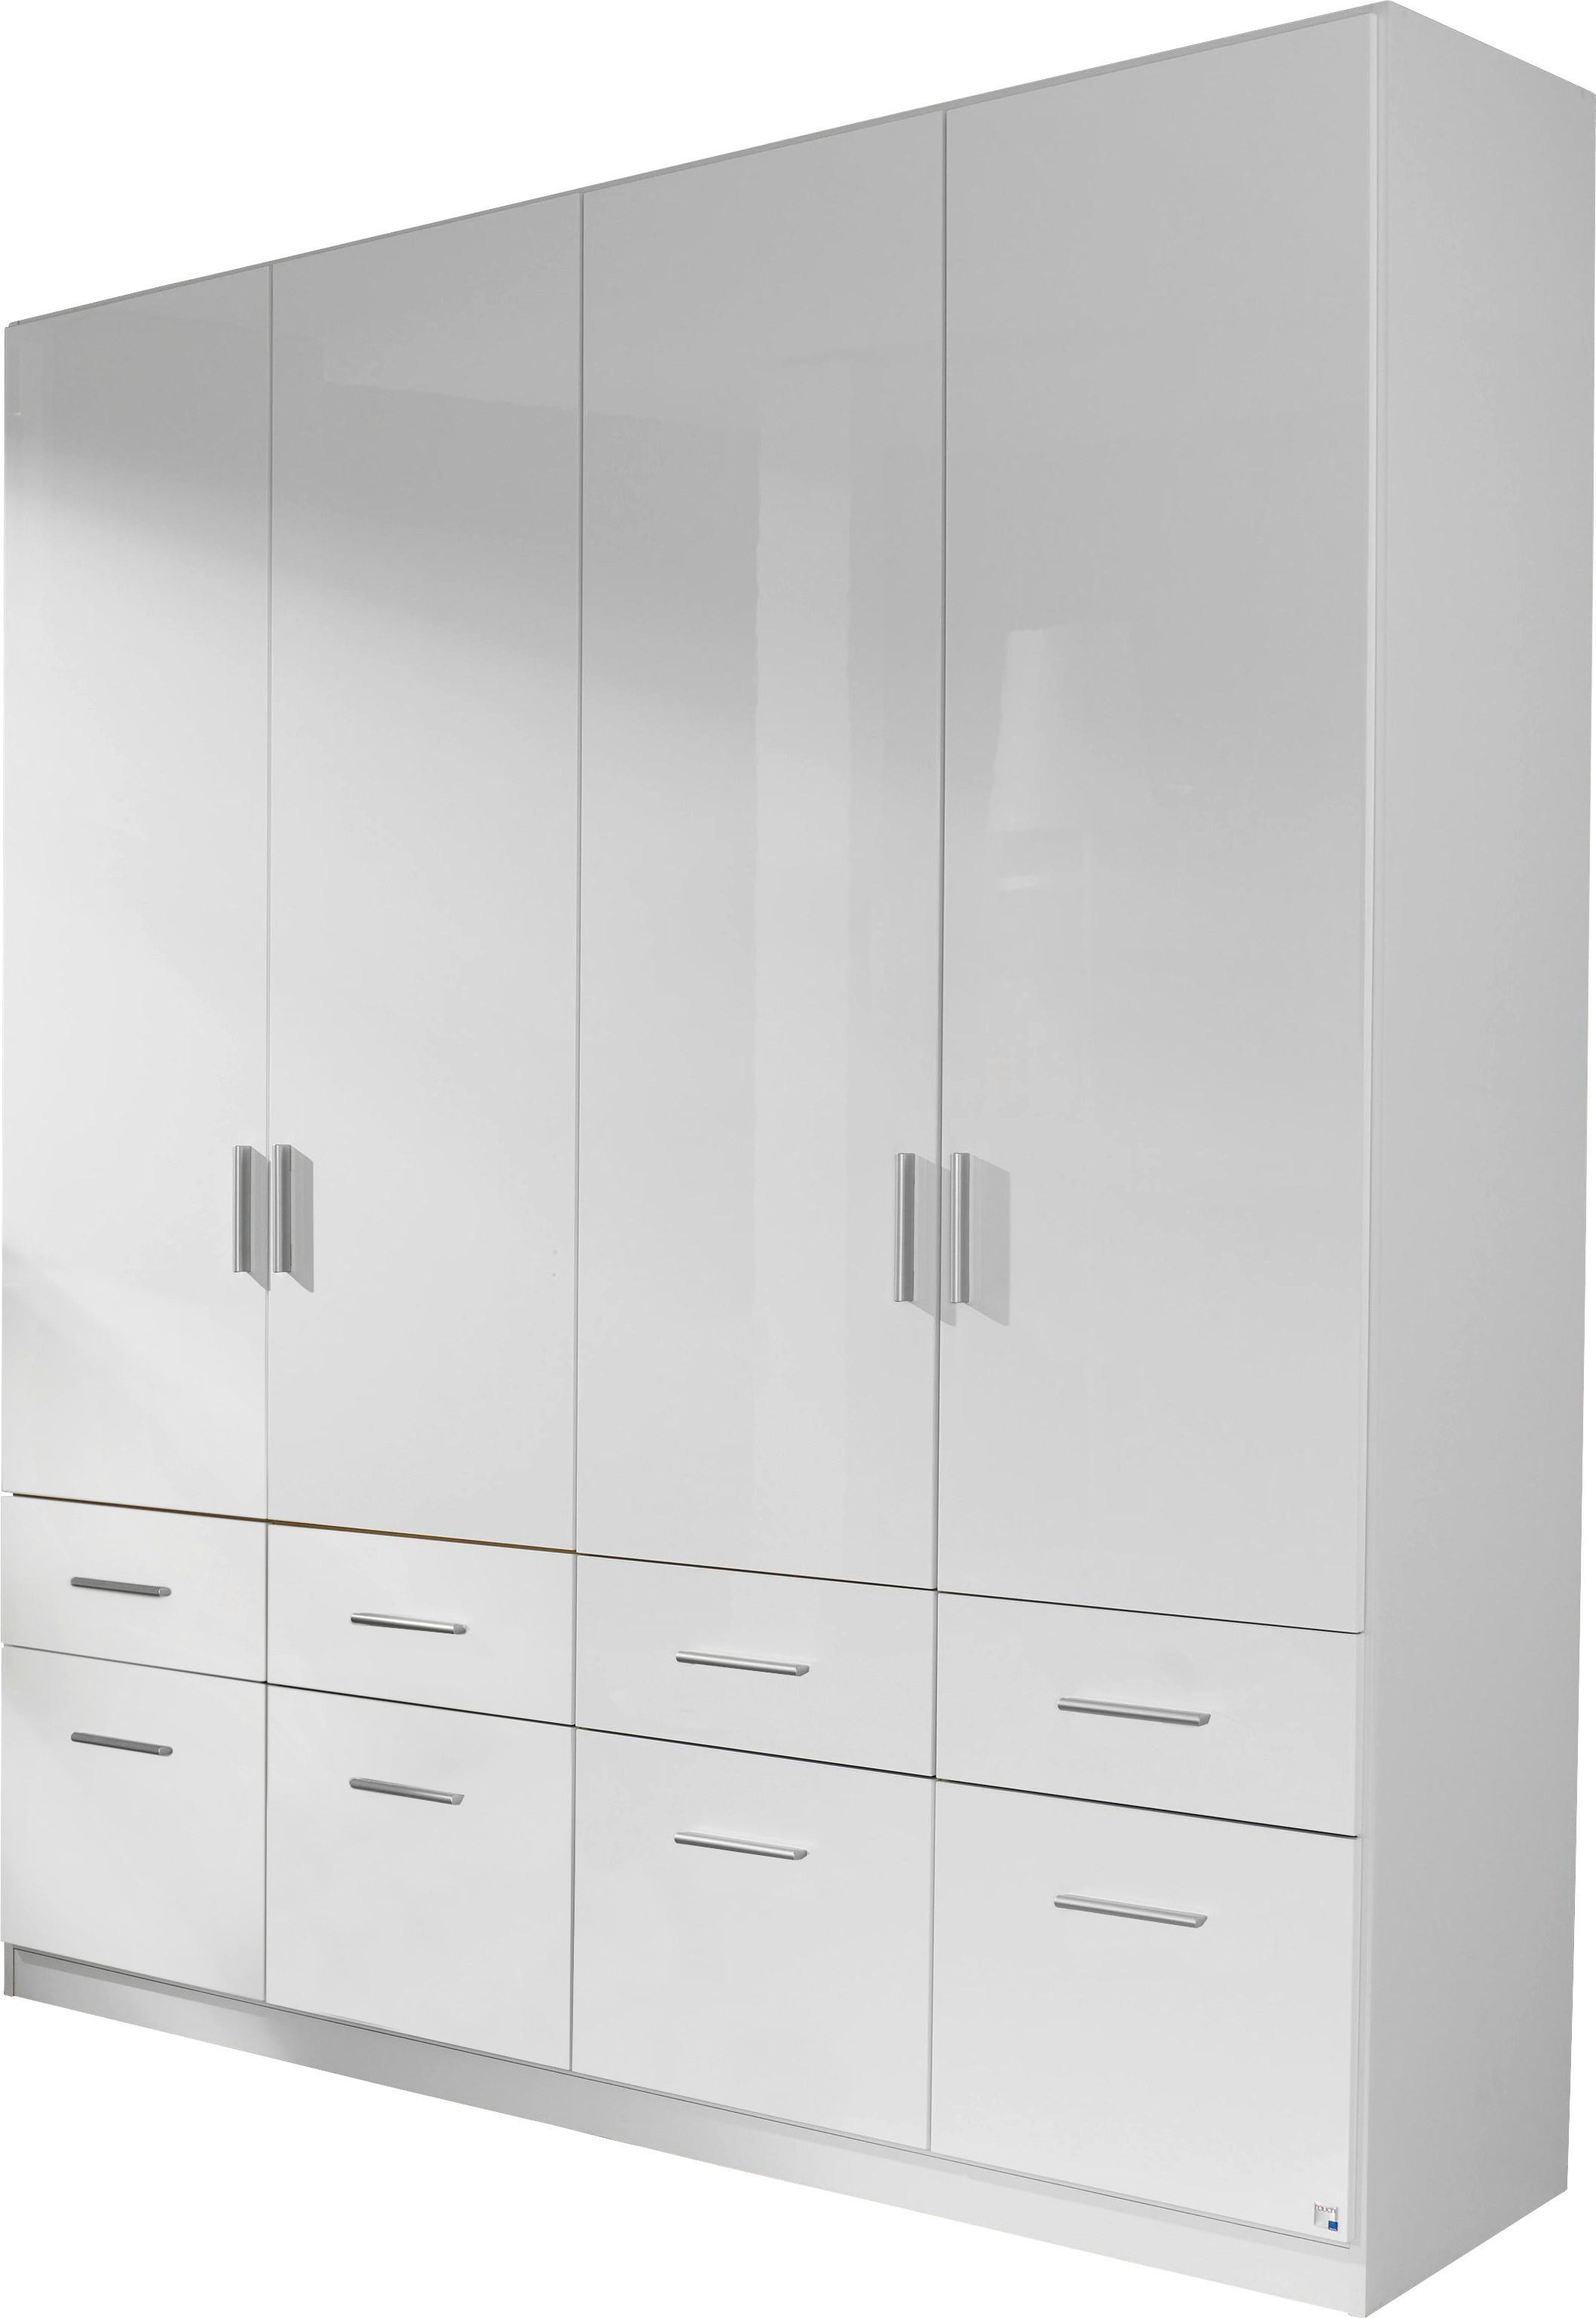 DREHTÜRENSCHRANK 4-türig Weiß, Weiß hochglanz  - Weiß hochglanz/Alufarben, Design, Holzwerkstoff/Kunststoff (181/210/54cm) - Carryhome